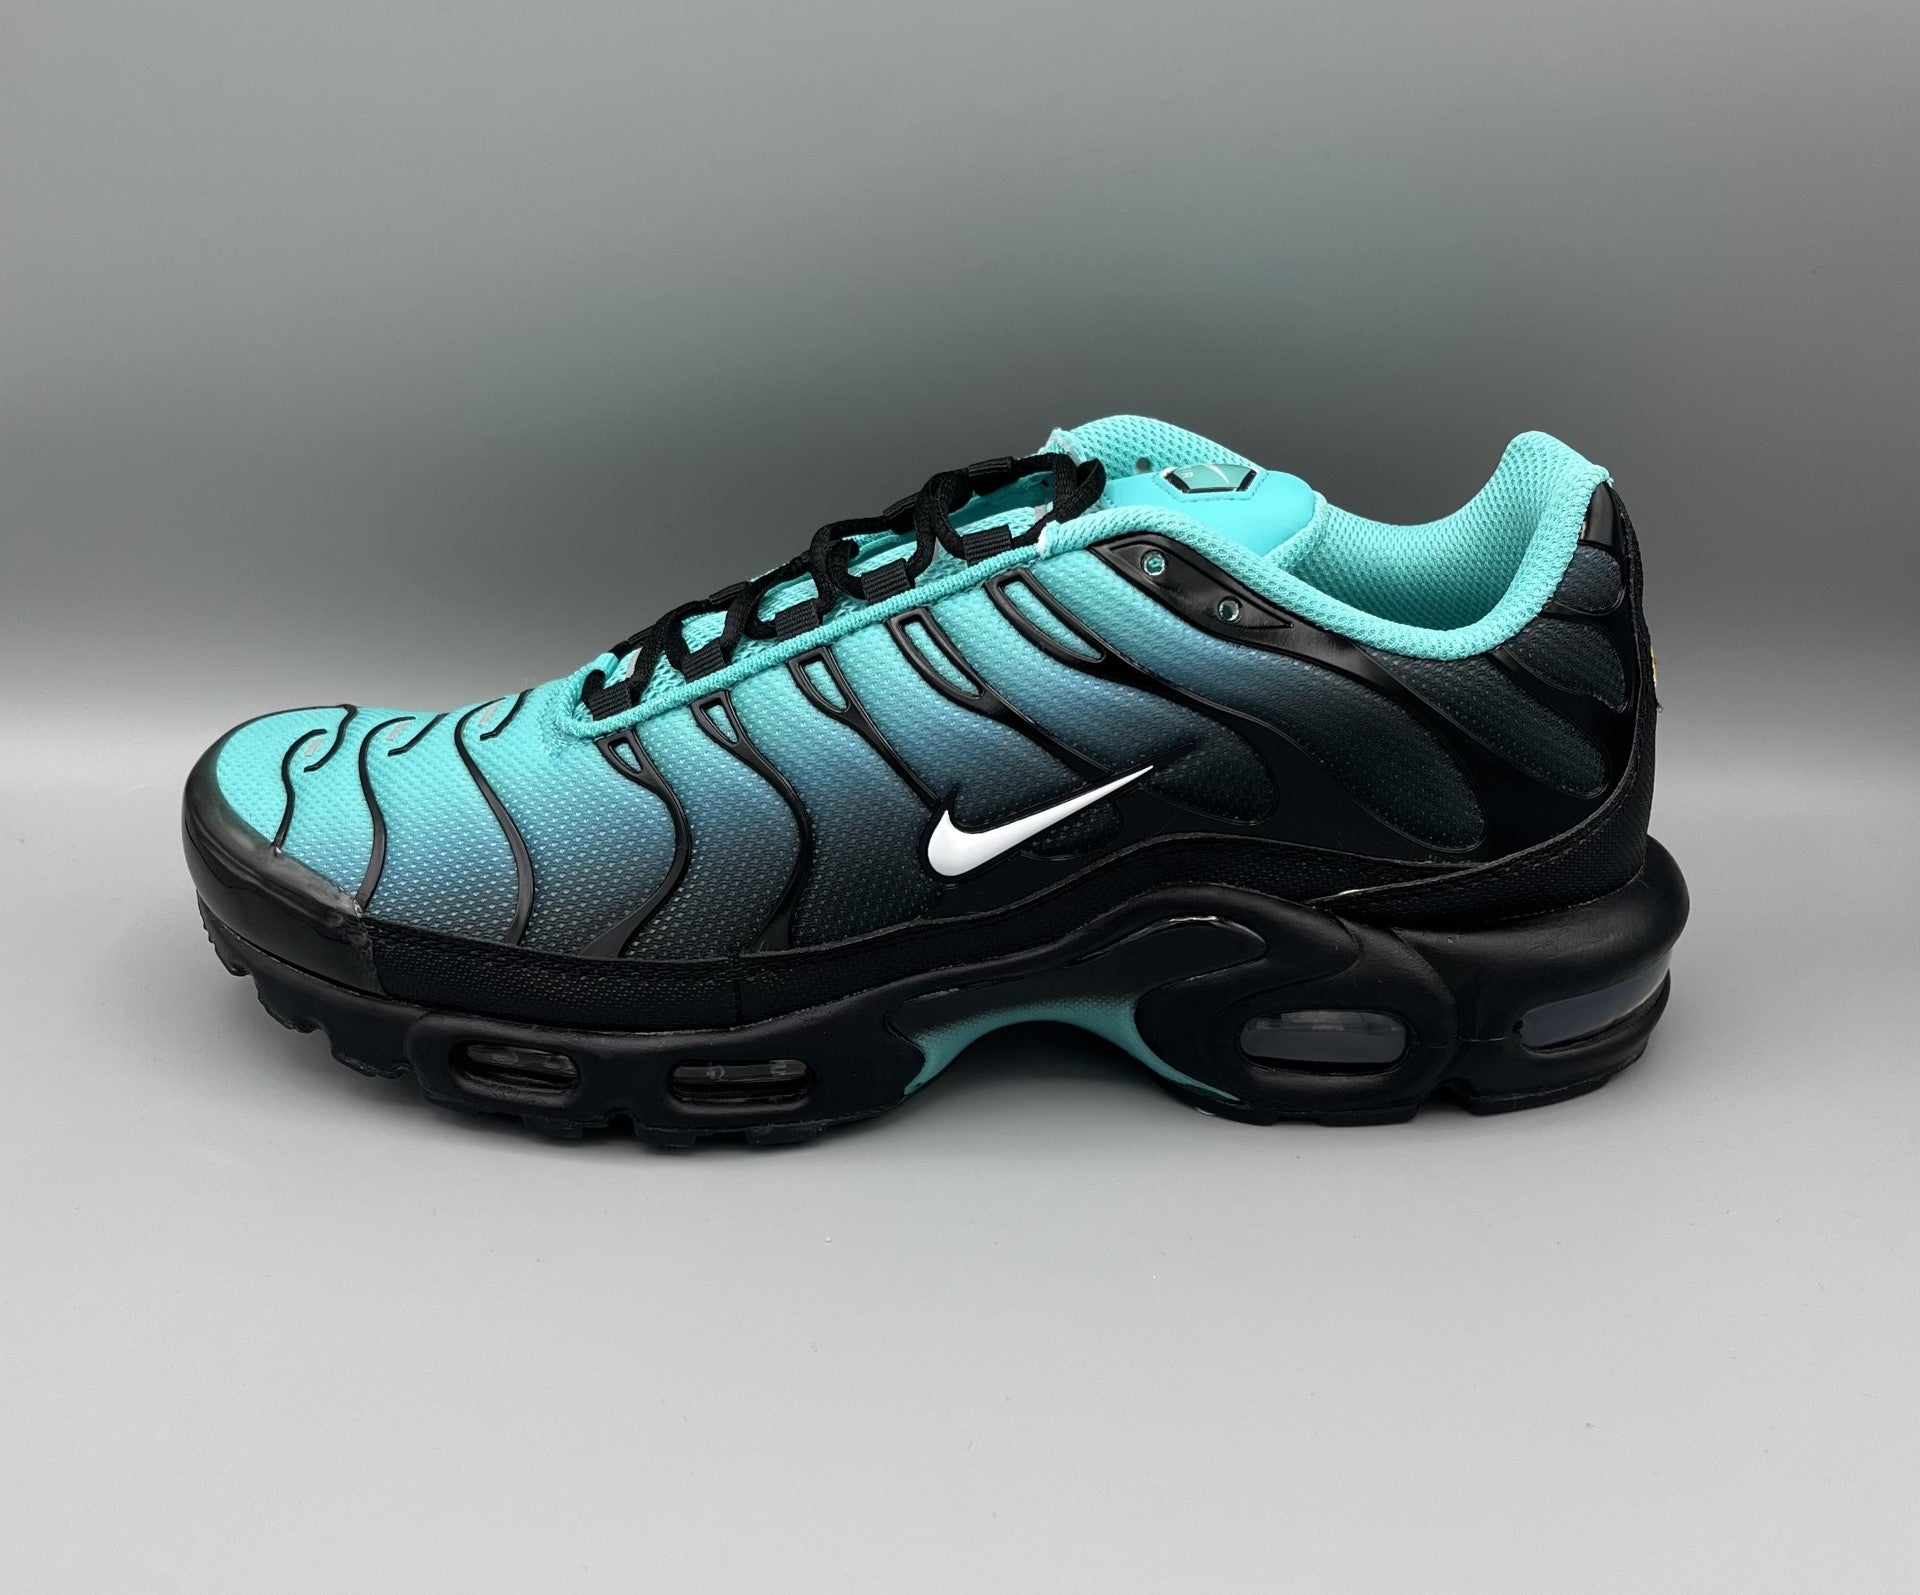 Snkrs83.com | Nike Air Max Plus “Light Retro” – snkrs83